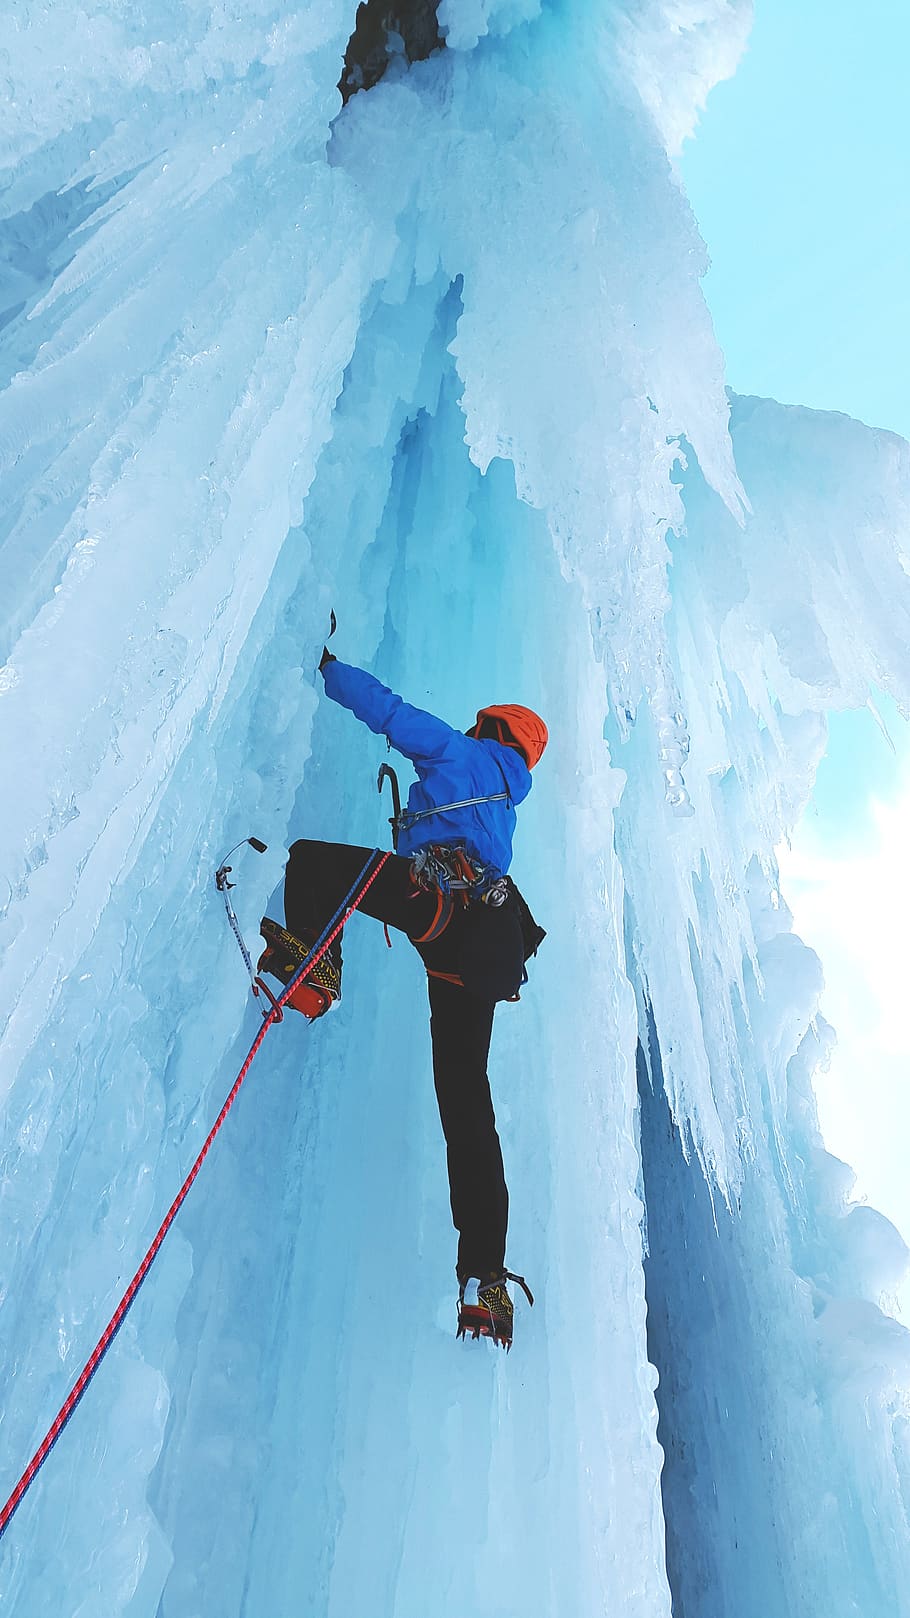 escalada en hielo, deportes extremos, escalada, hielo, cascada de hielo, escaladores de hielo, alpinismo, congelado, bergsport, frío